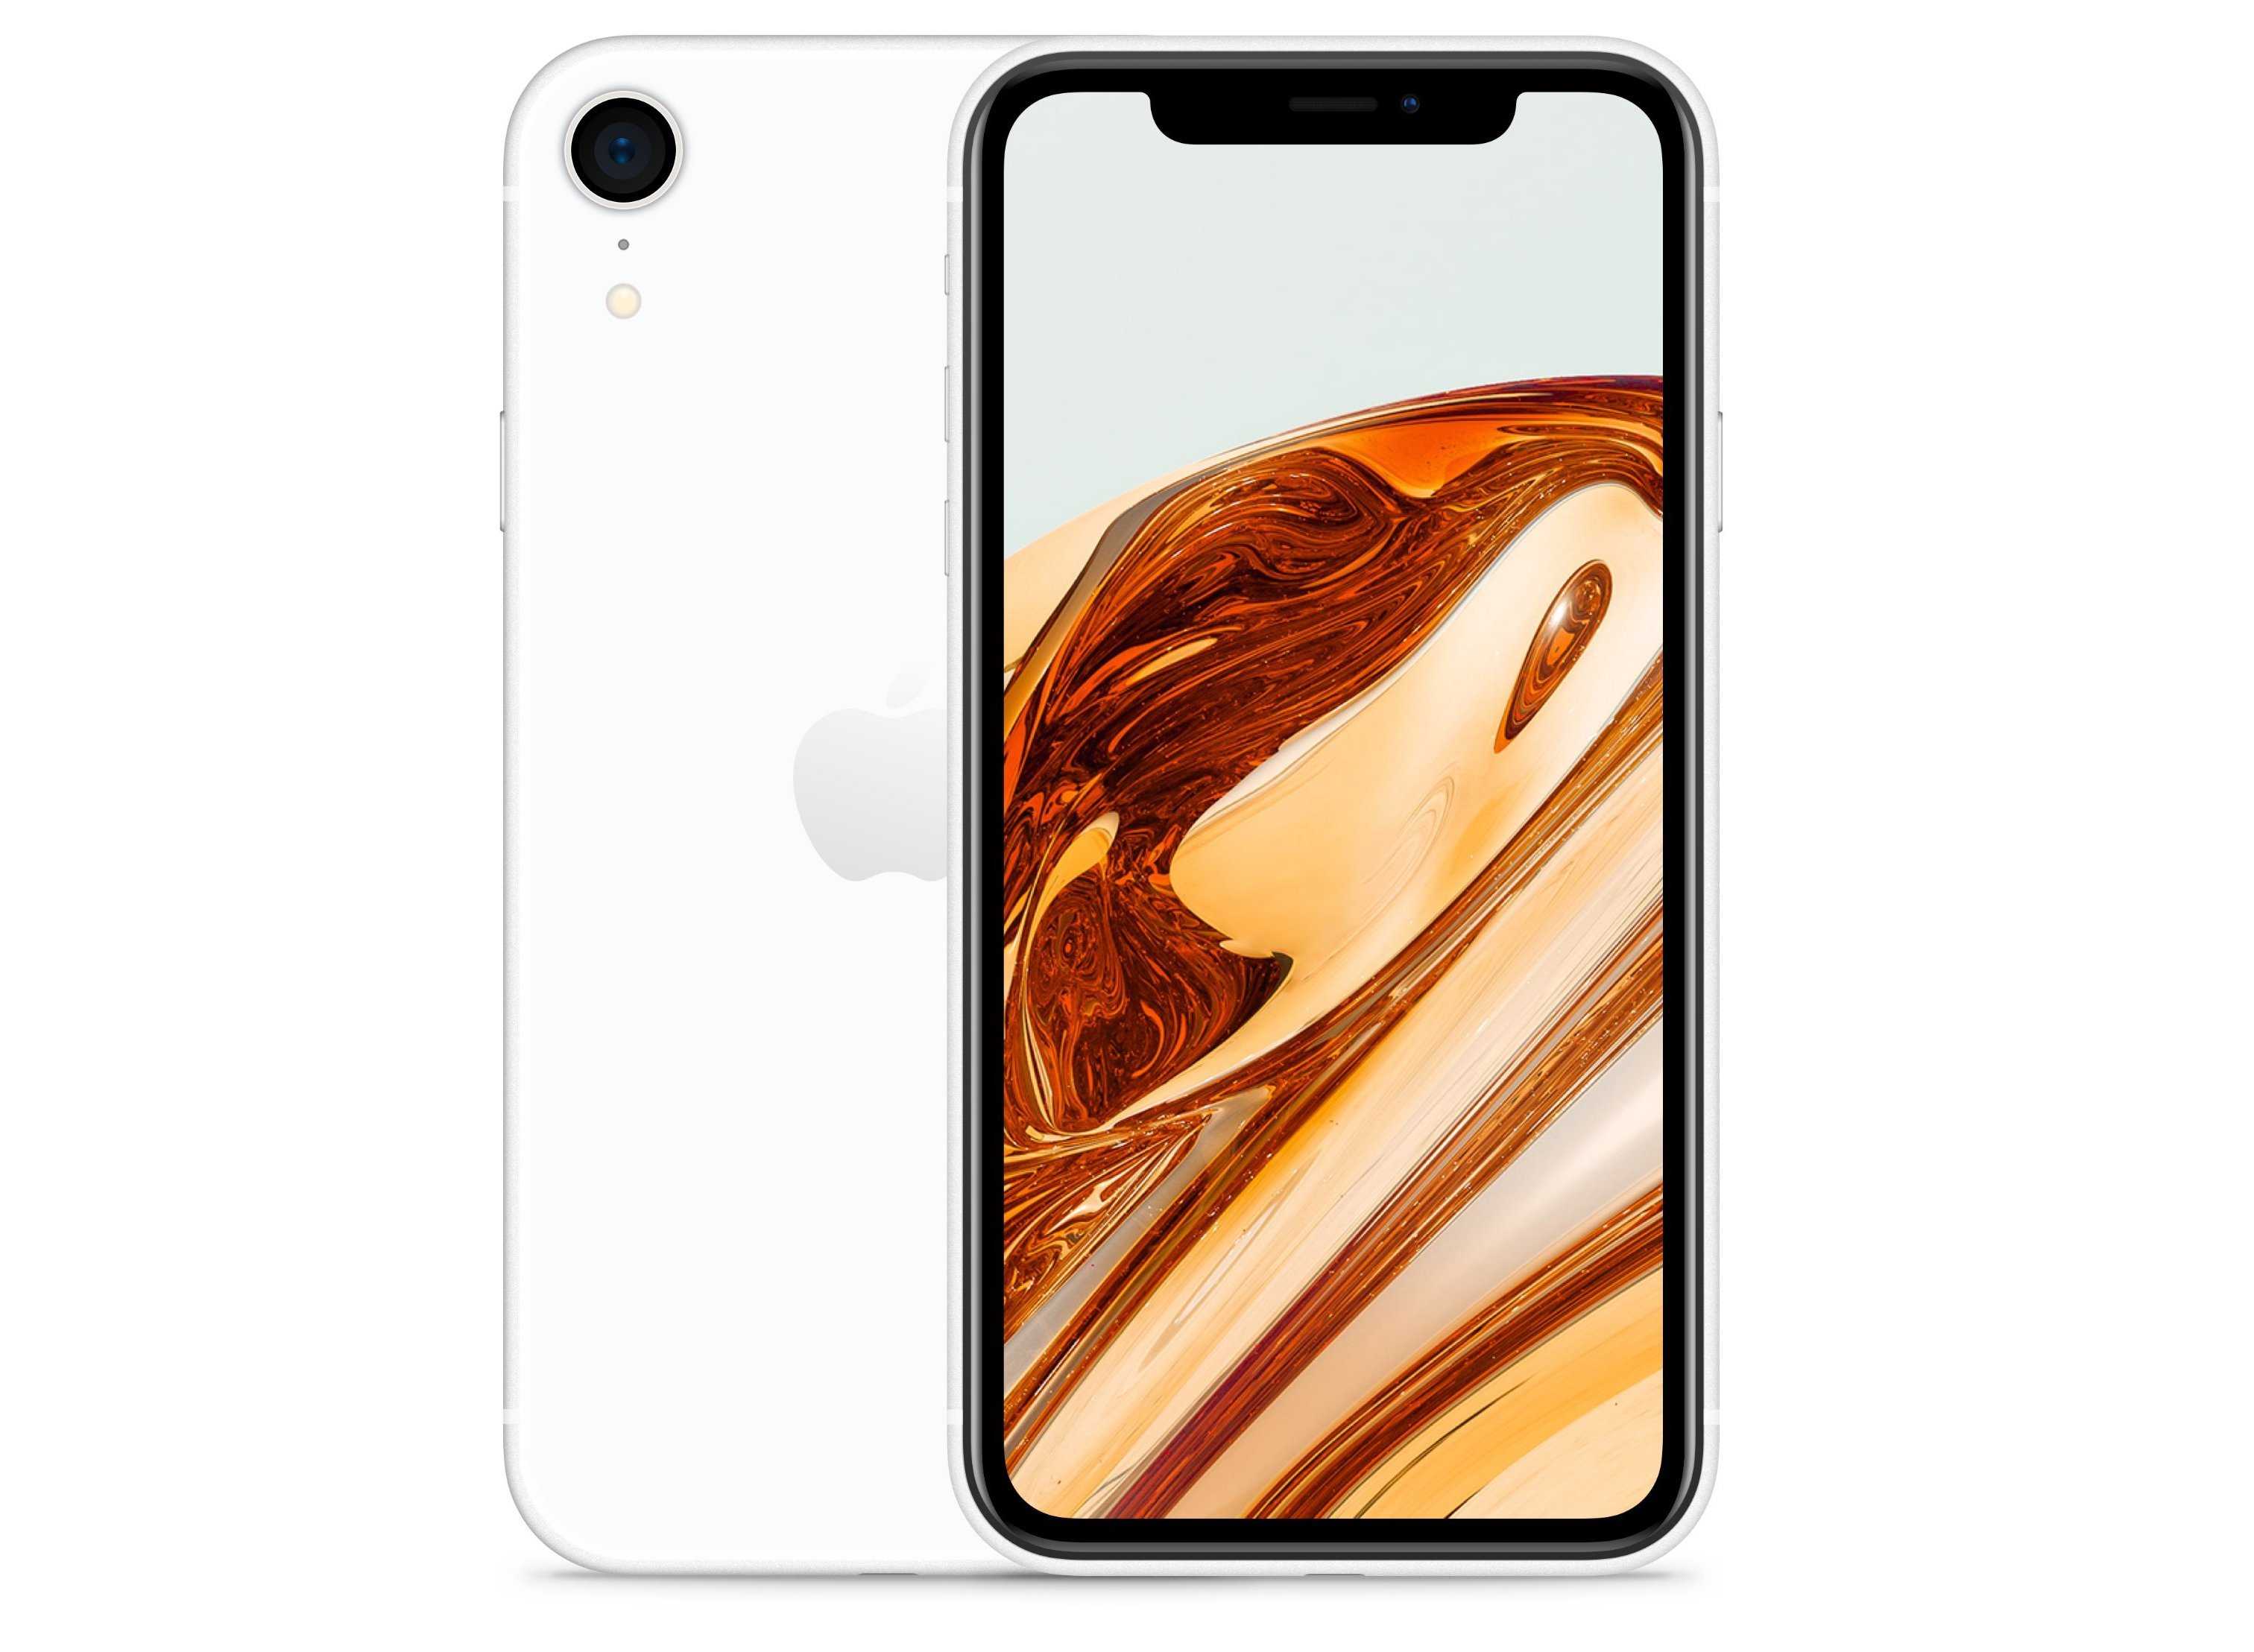 Мобильный телефон iPhone SE (2020) - подробные характеристики обзоры видео фото Цены в интернет-магазинах где можно купить мобильный телефон iPhone SE (2020)